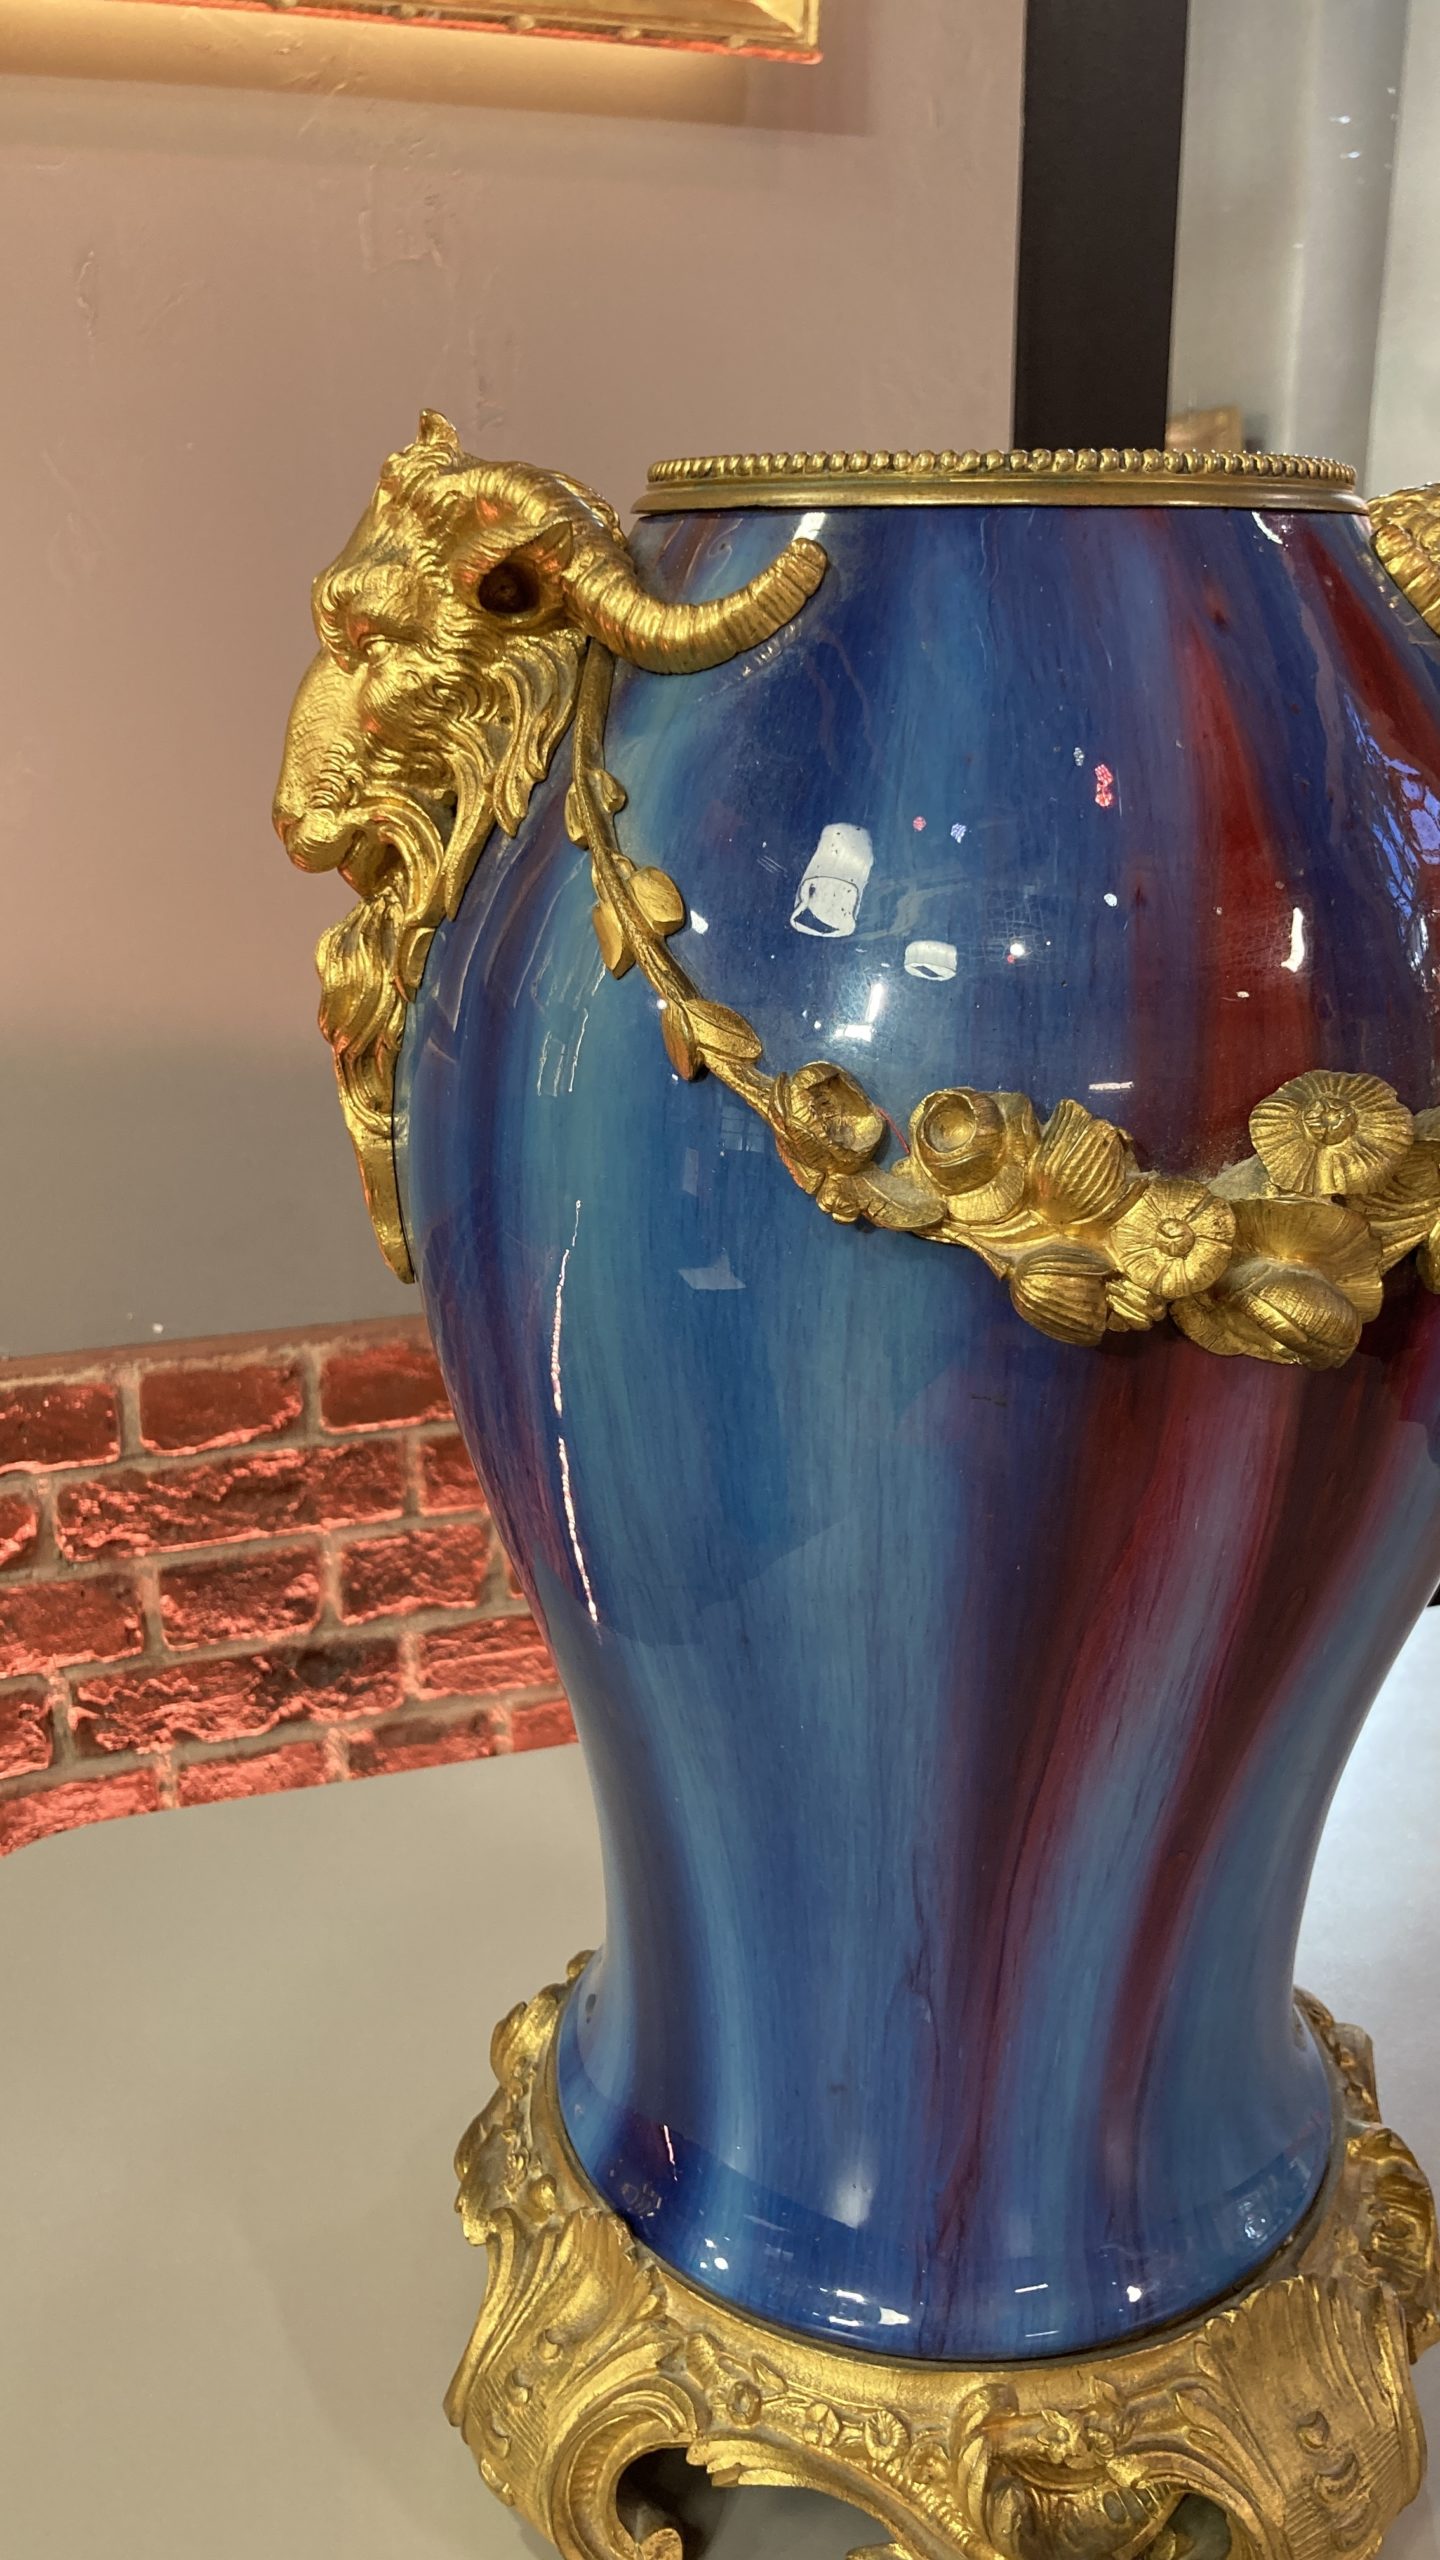 vase-cérémique-bleu-rouge-bronze-eugène-baudin-wolf-louis-XVI-aurore-morisse-antiquaire-décoration-antiquité-objet-ancien-liège-paris-affaire-conclue-marchad-art-antiques4